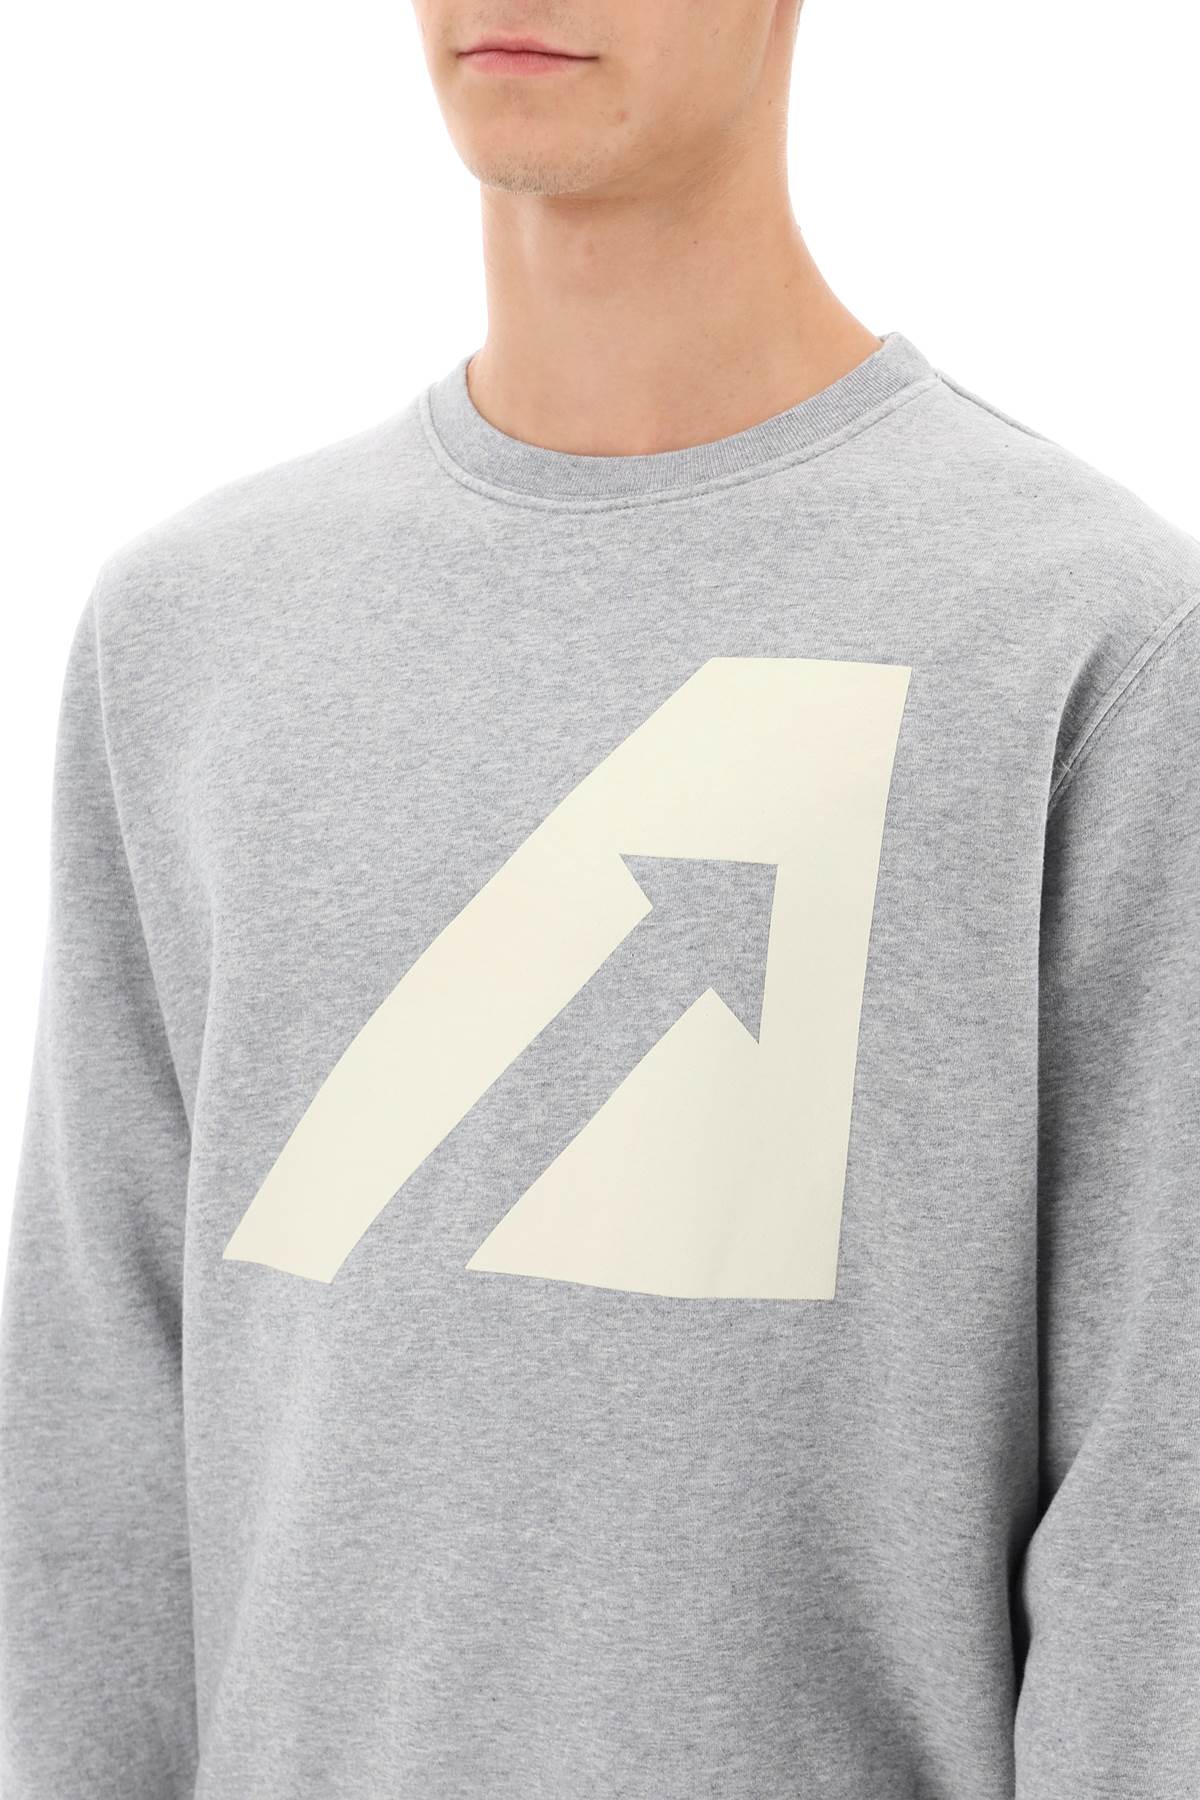 Autry Autry crew-neck sweatshirt with logo print